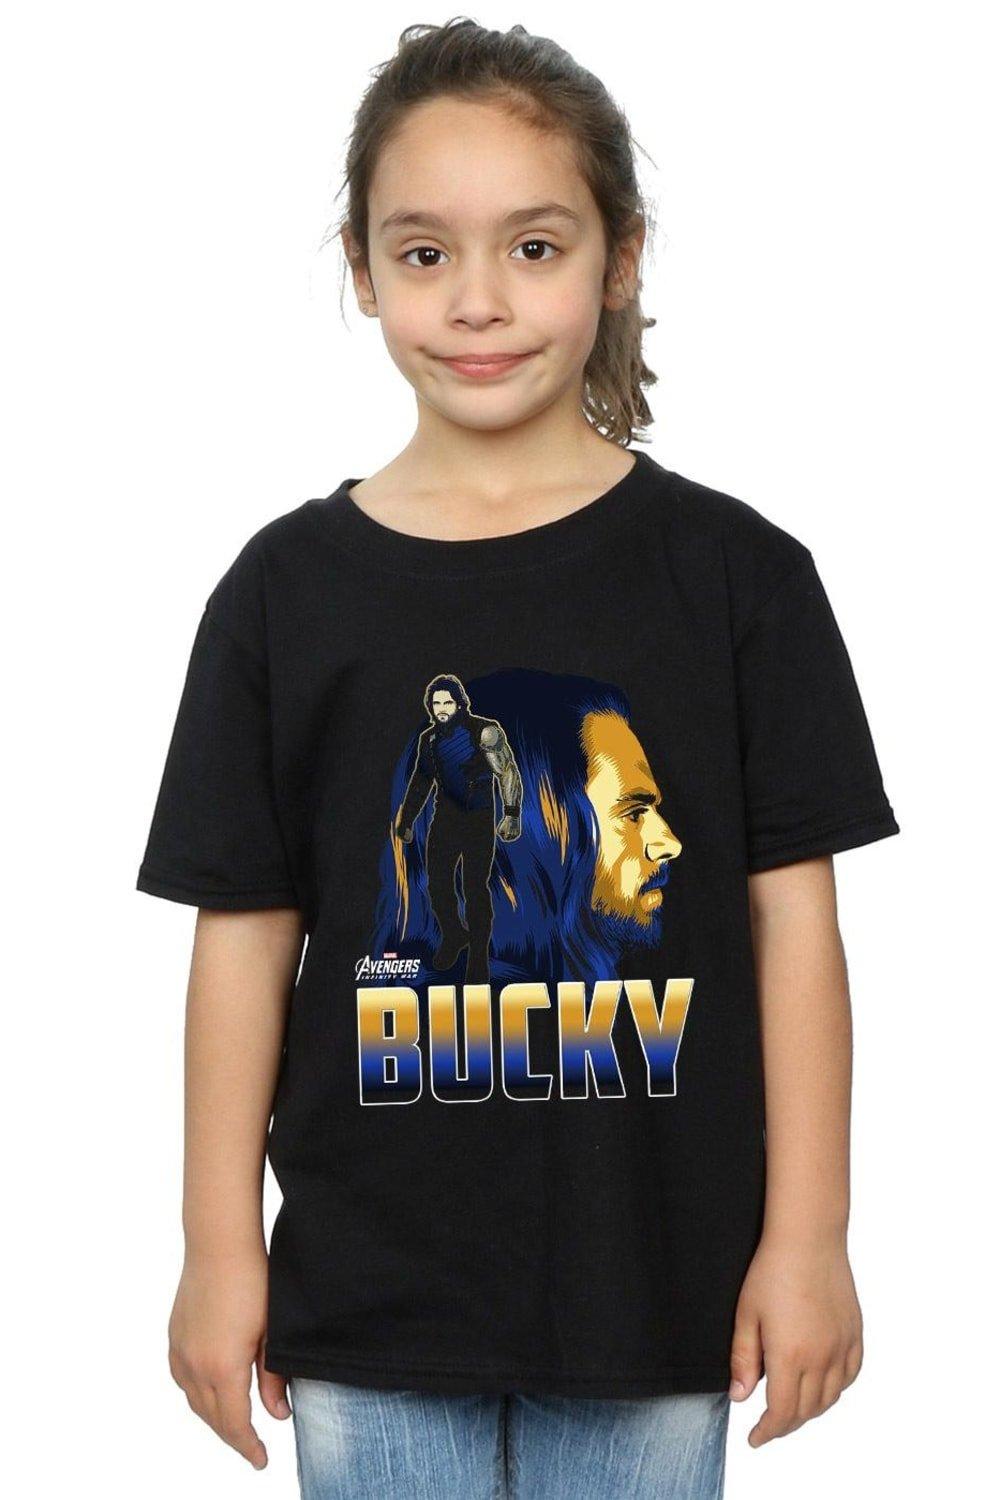 Avengers Infinity War Bucky Character Cotton T-Shirt